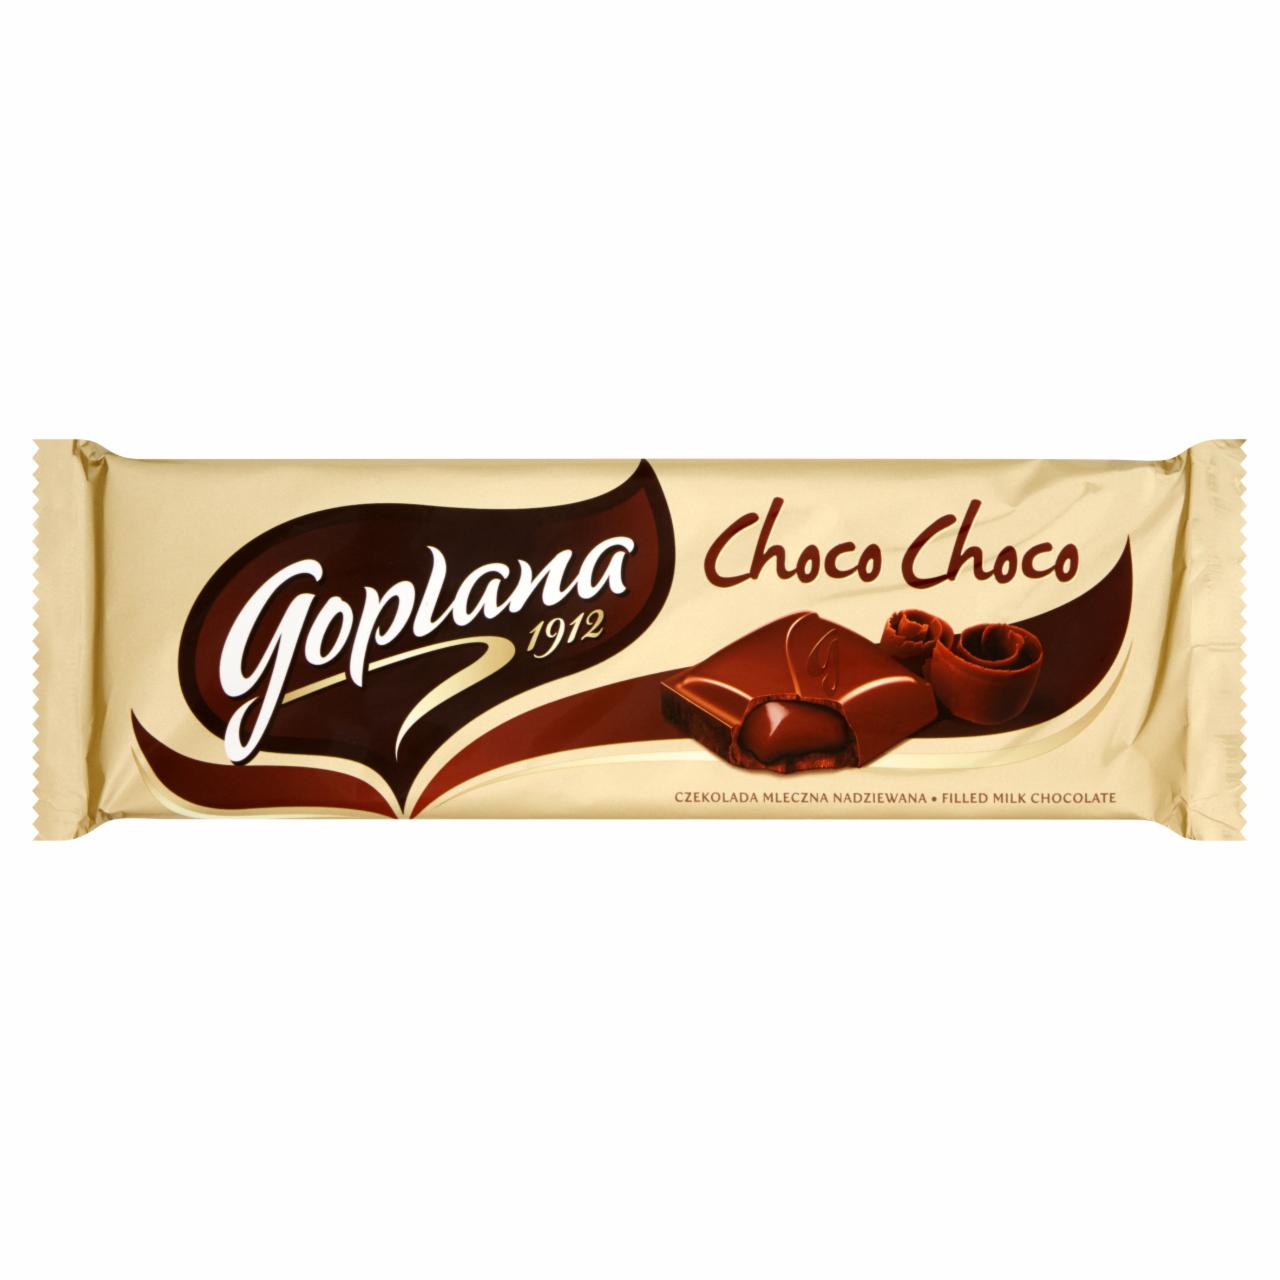 Zdjęcia - Goplana Choco Choco Czekolada mleczna nadziewana 245 g